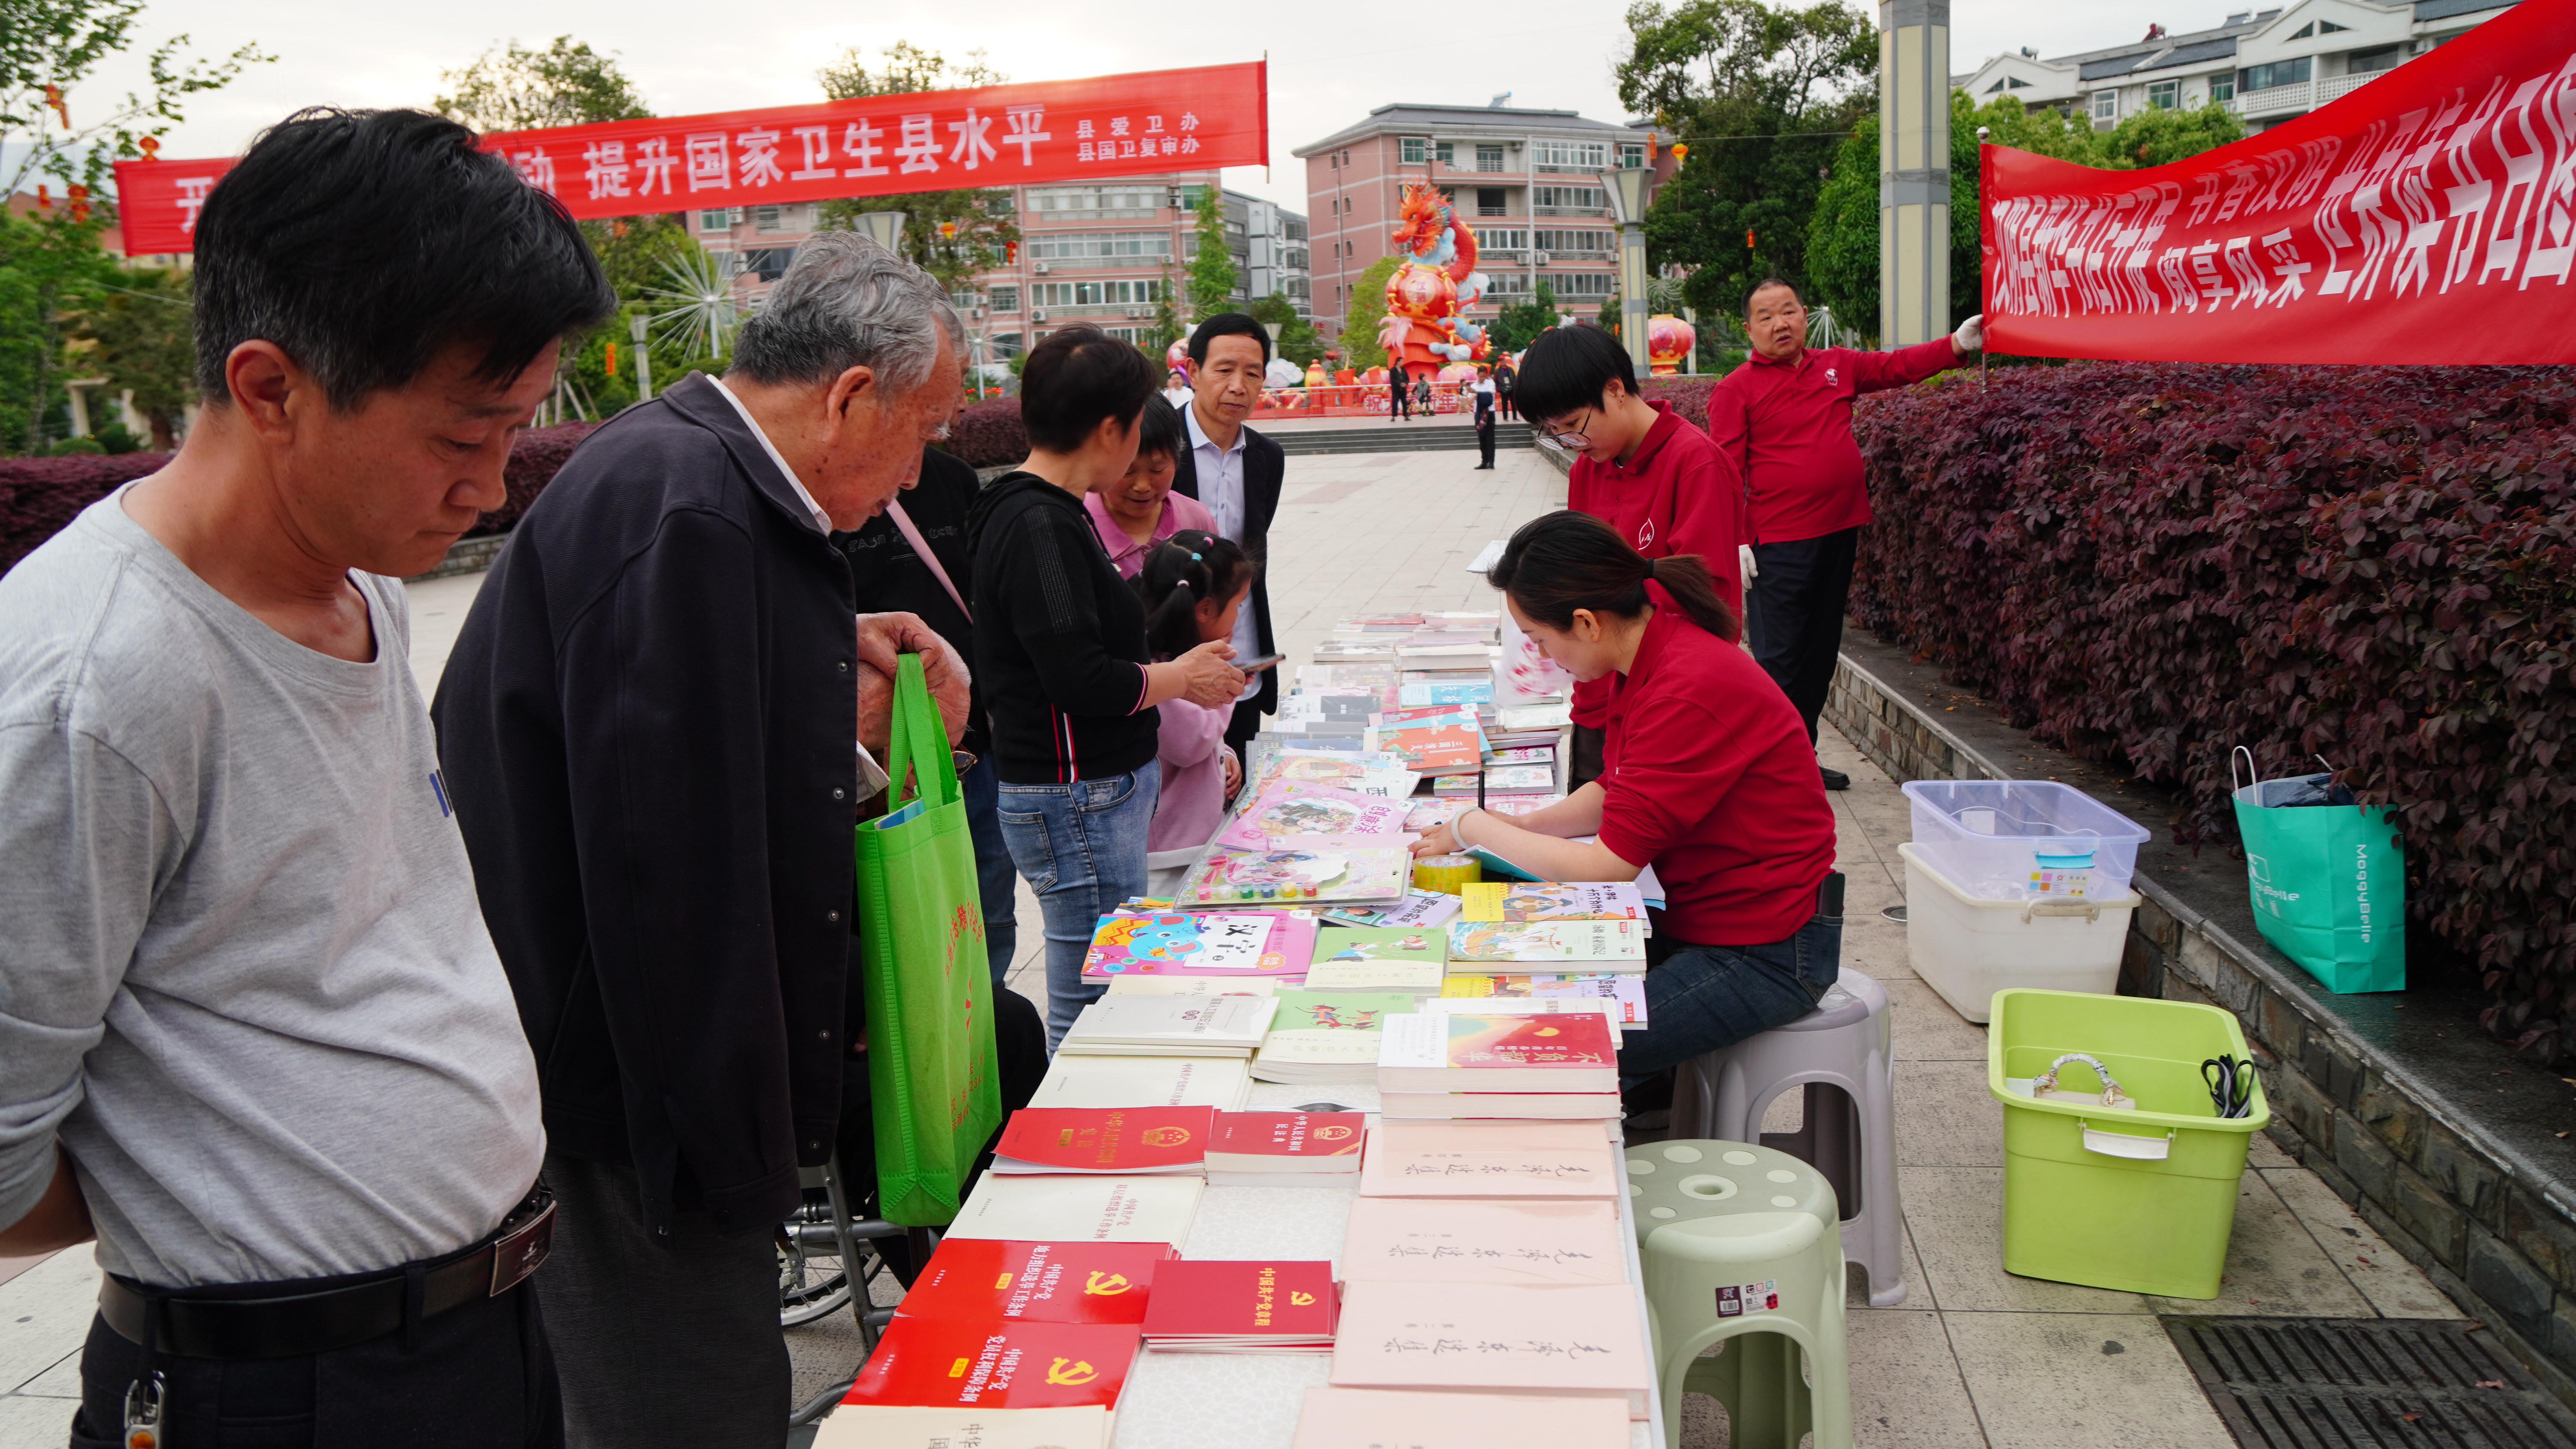 汉阴县新华书店开展世界读书日图书宣传活动